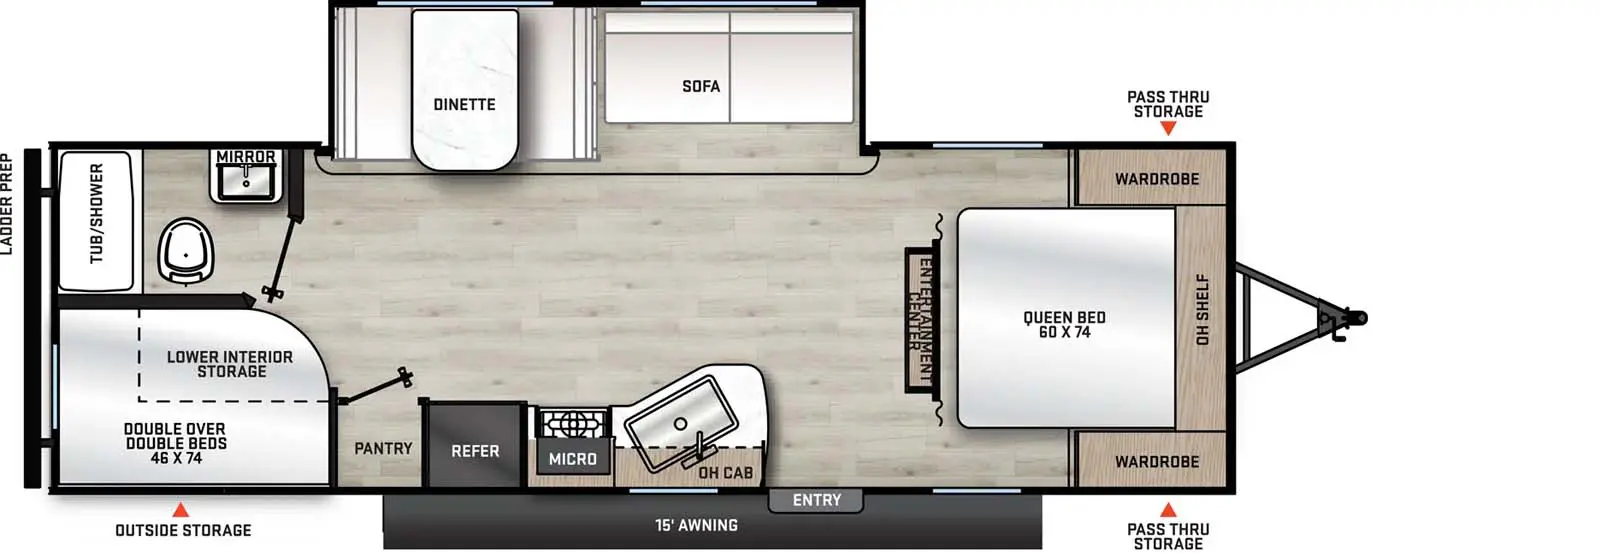 261BHS Floorplan Image